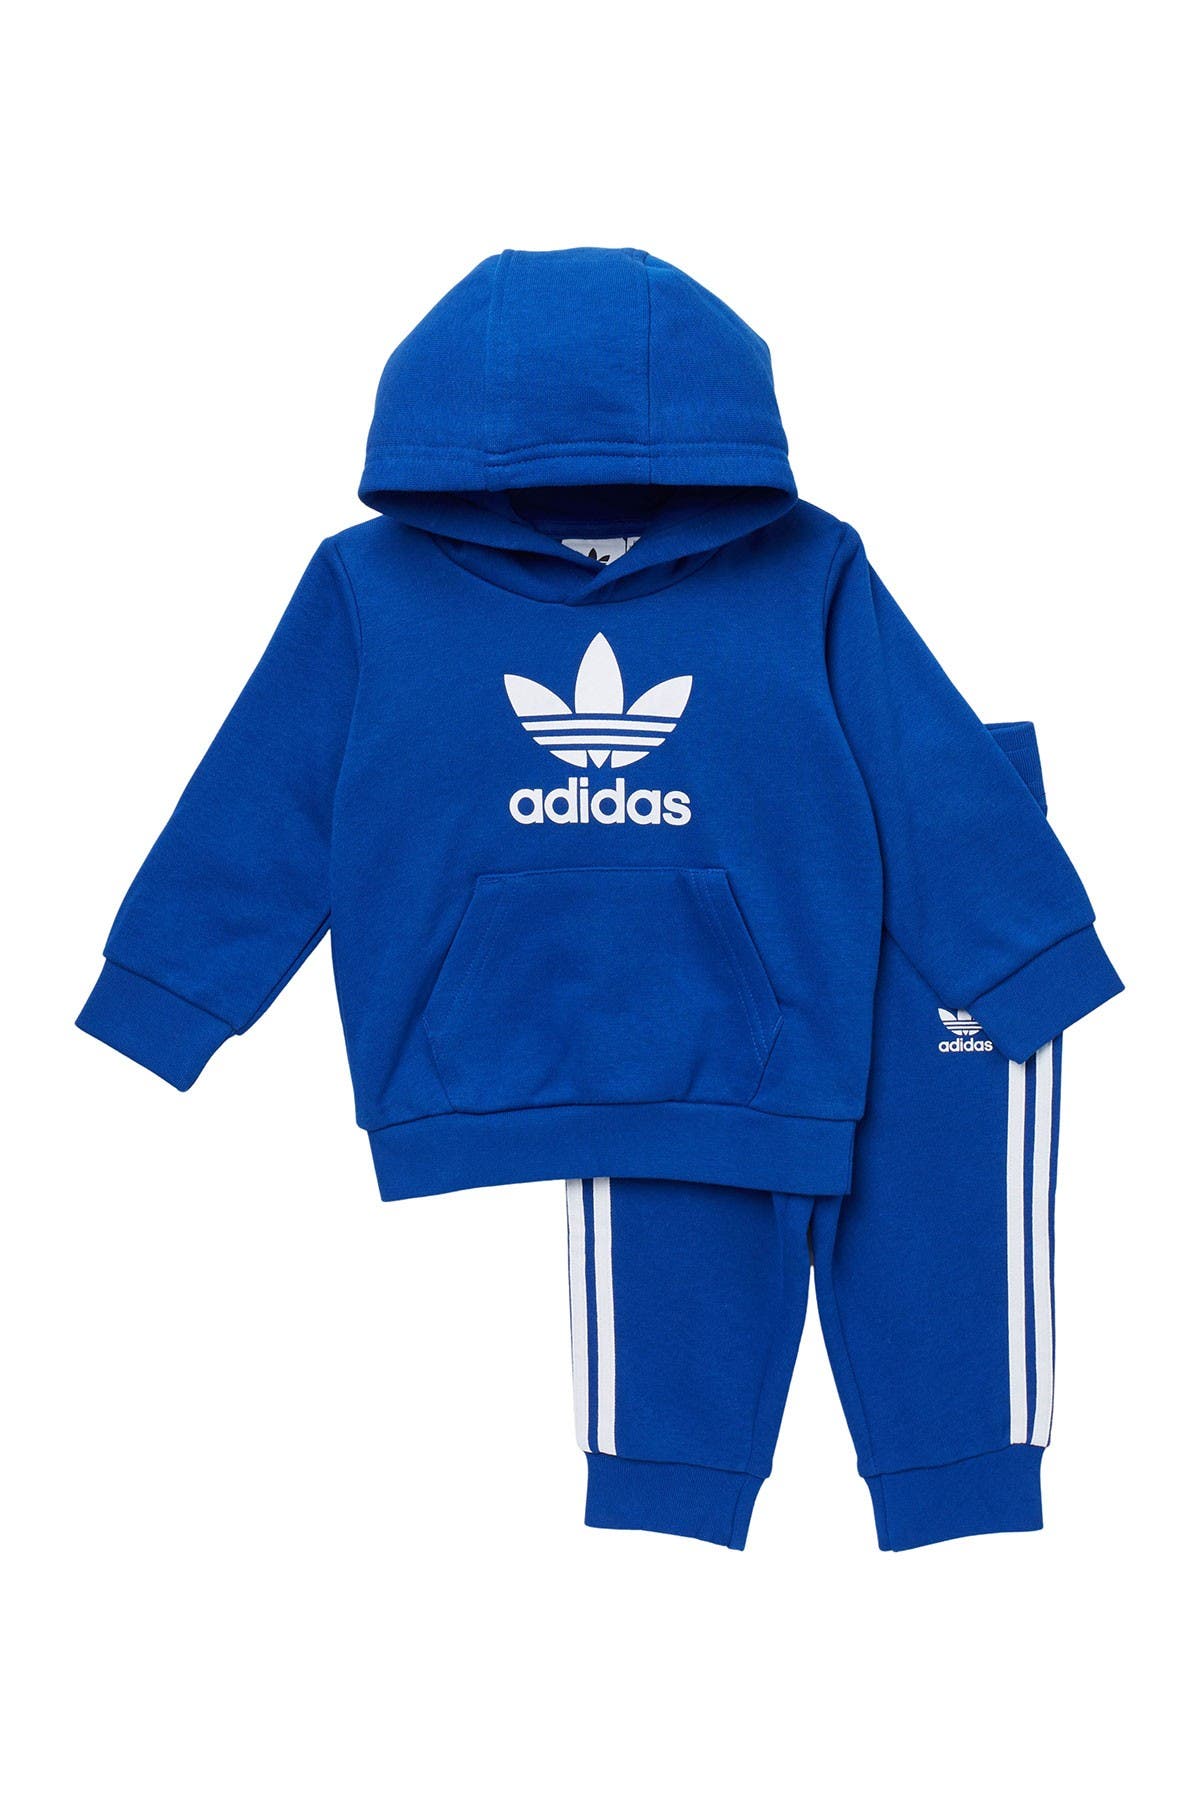 adidas hoodie set baby